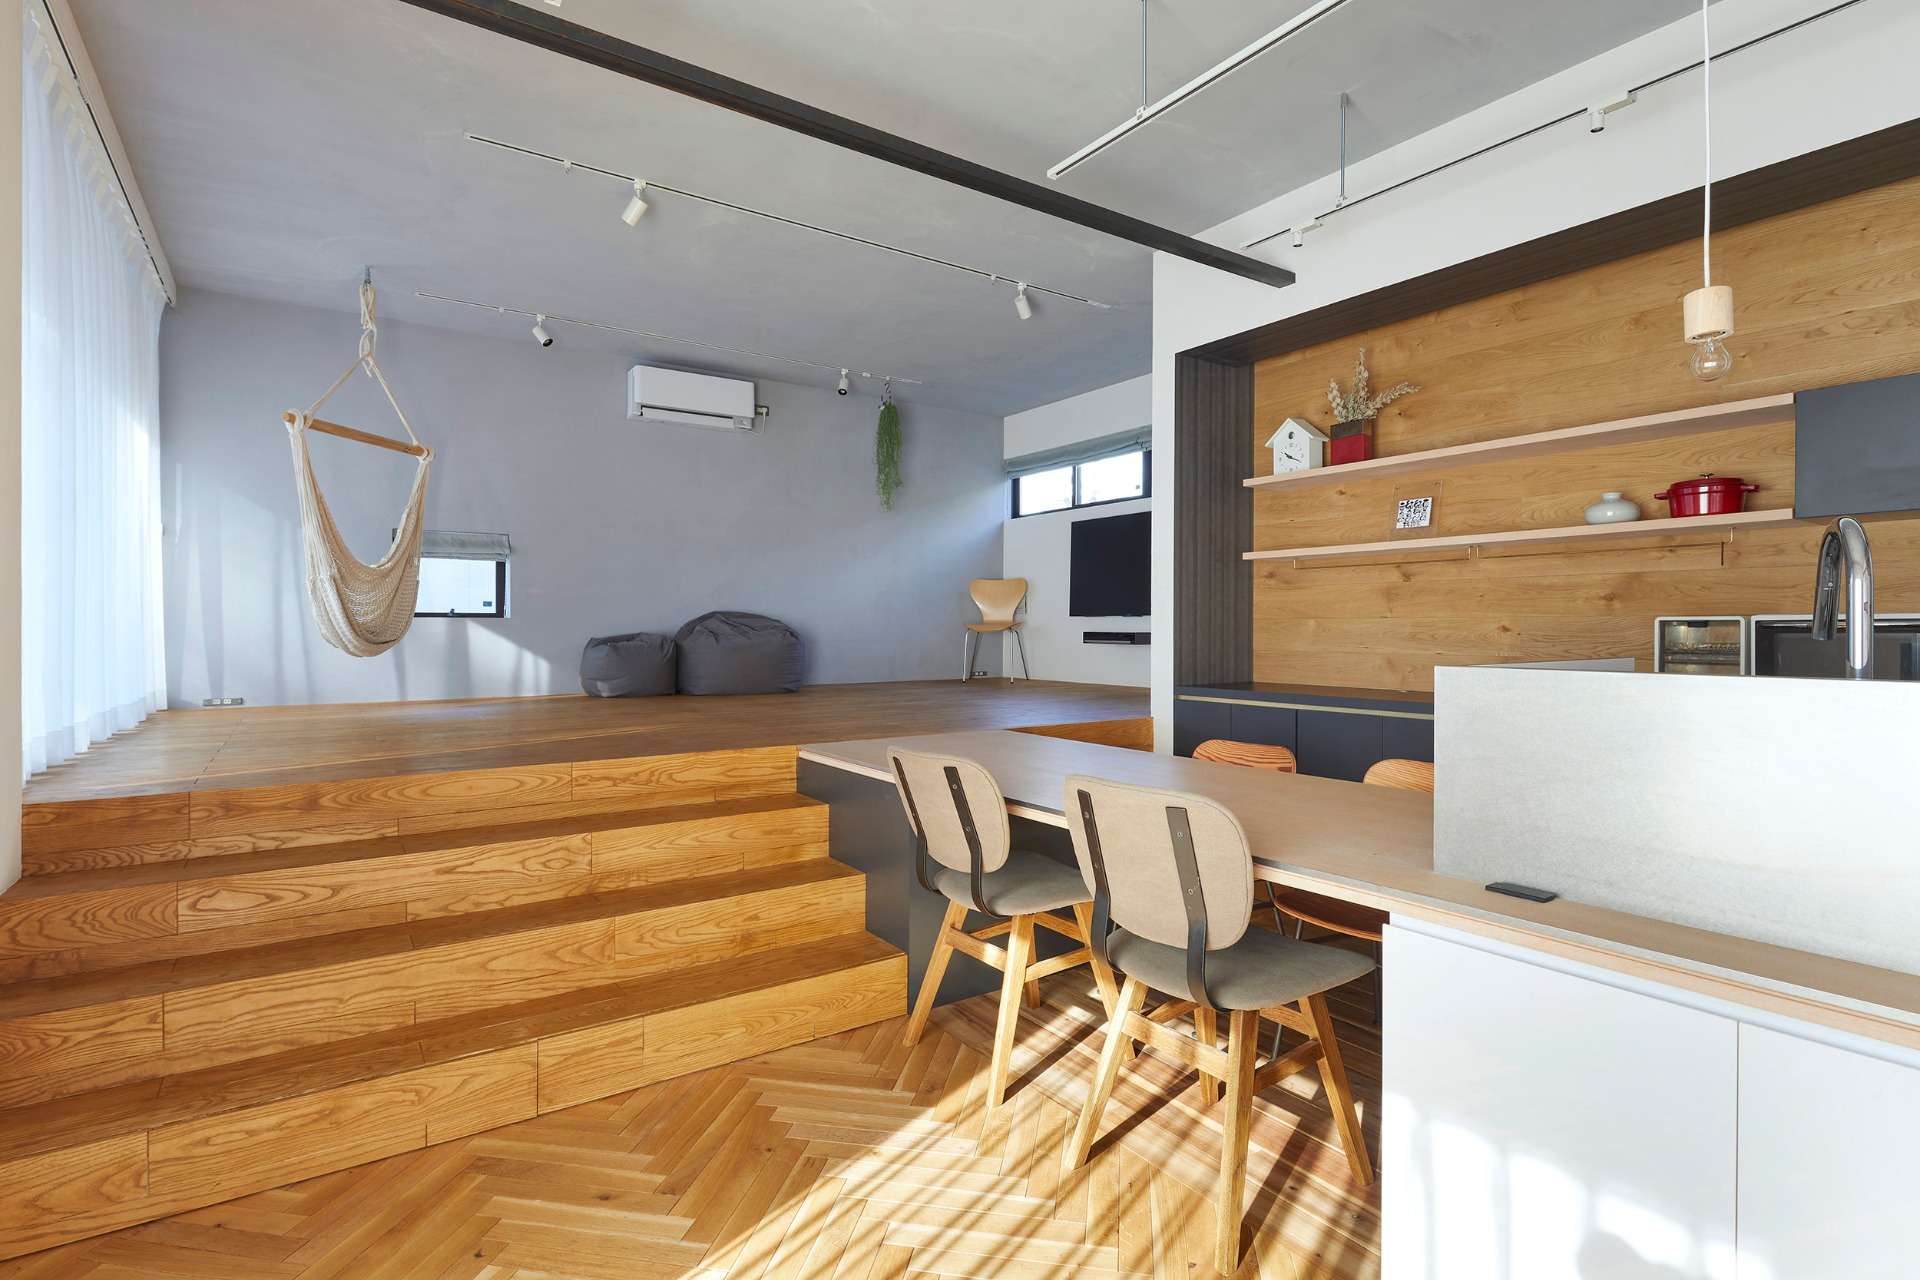 広島市で設計事務所と共につくるリノベーションはasazu design office